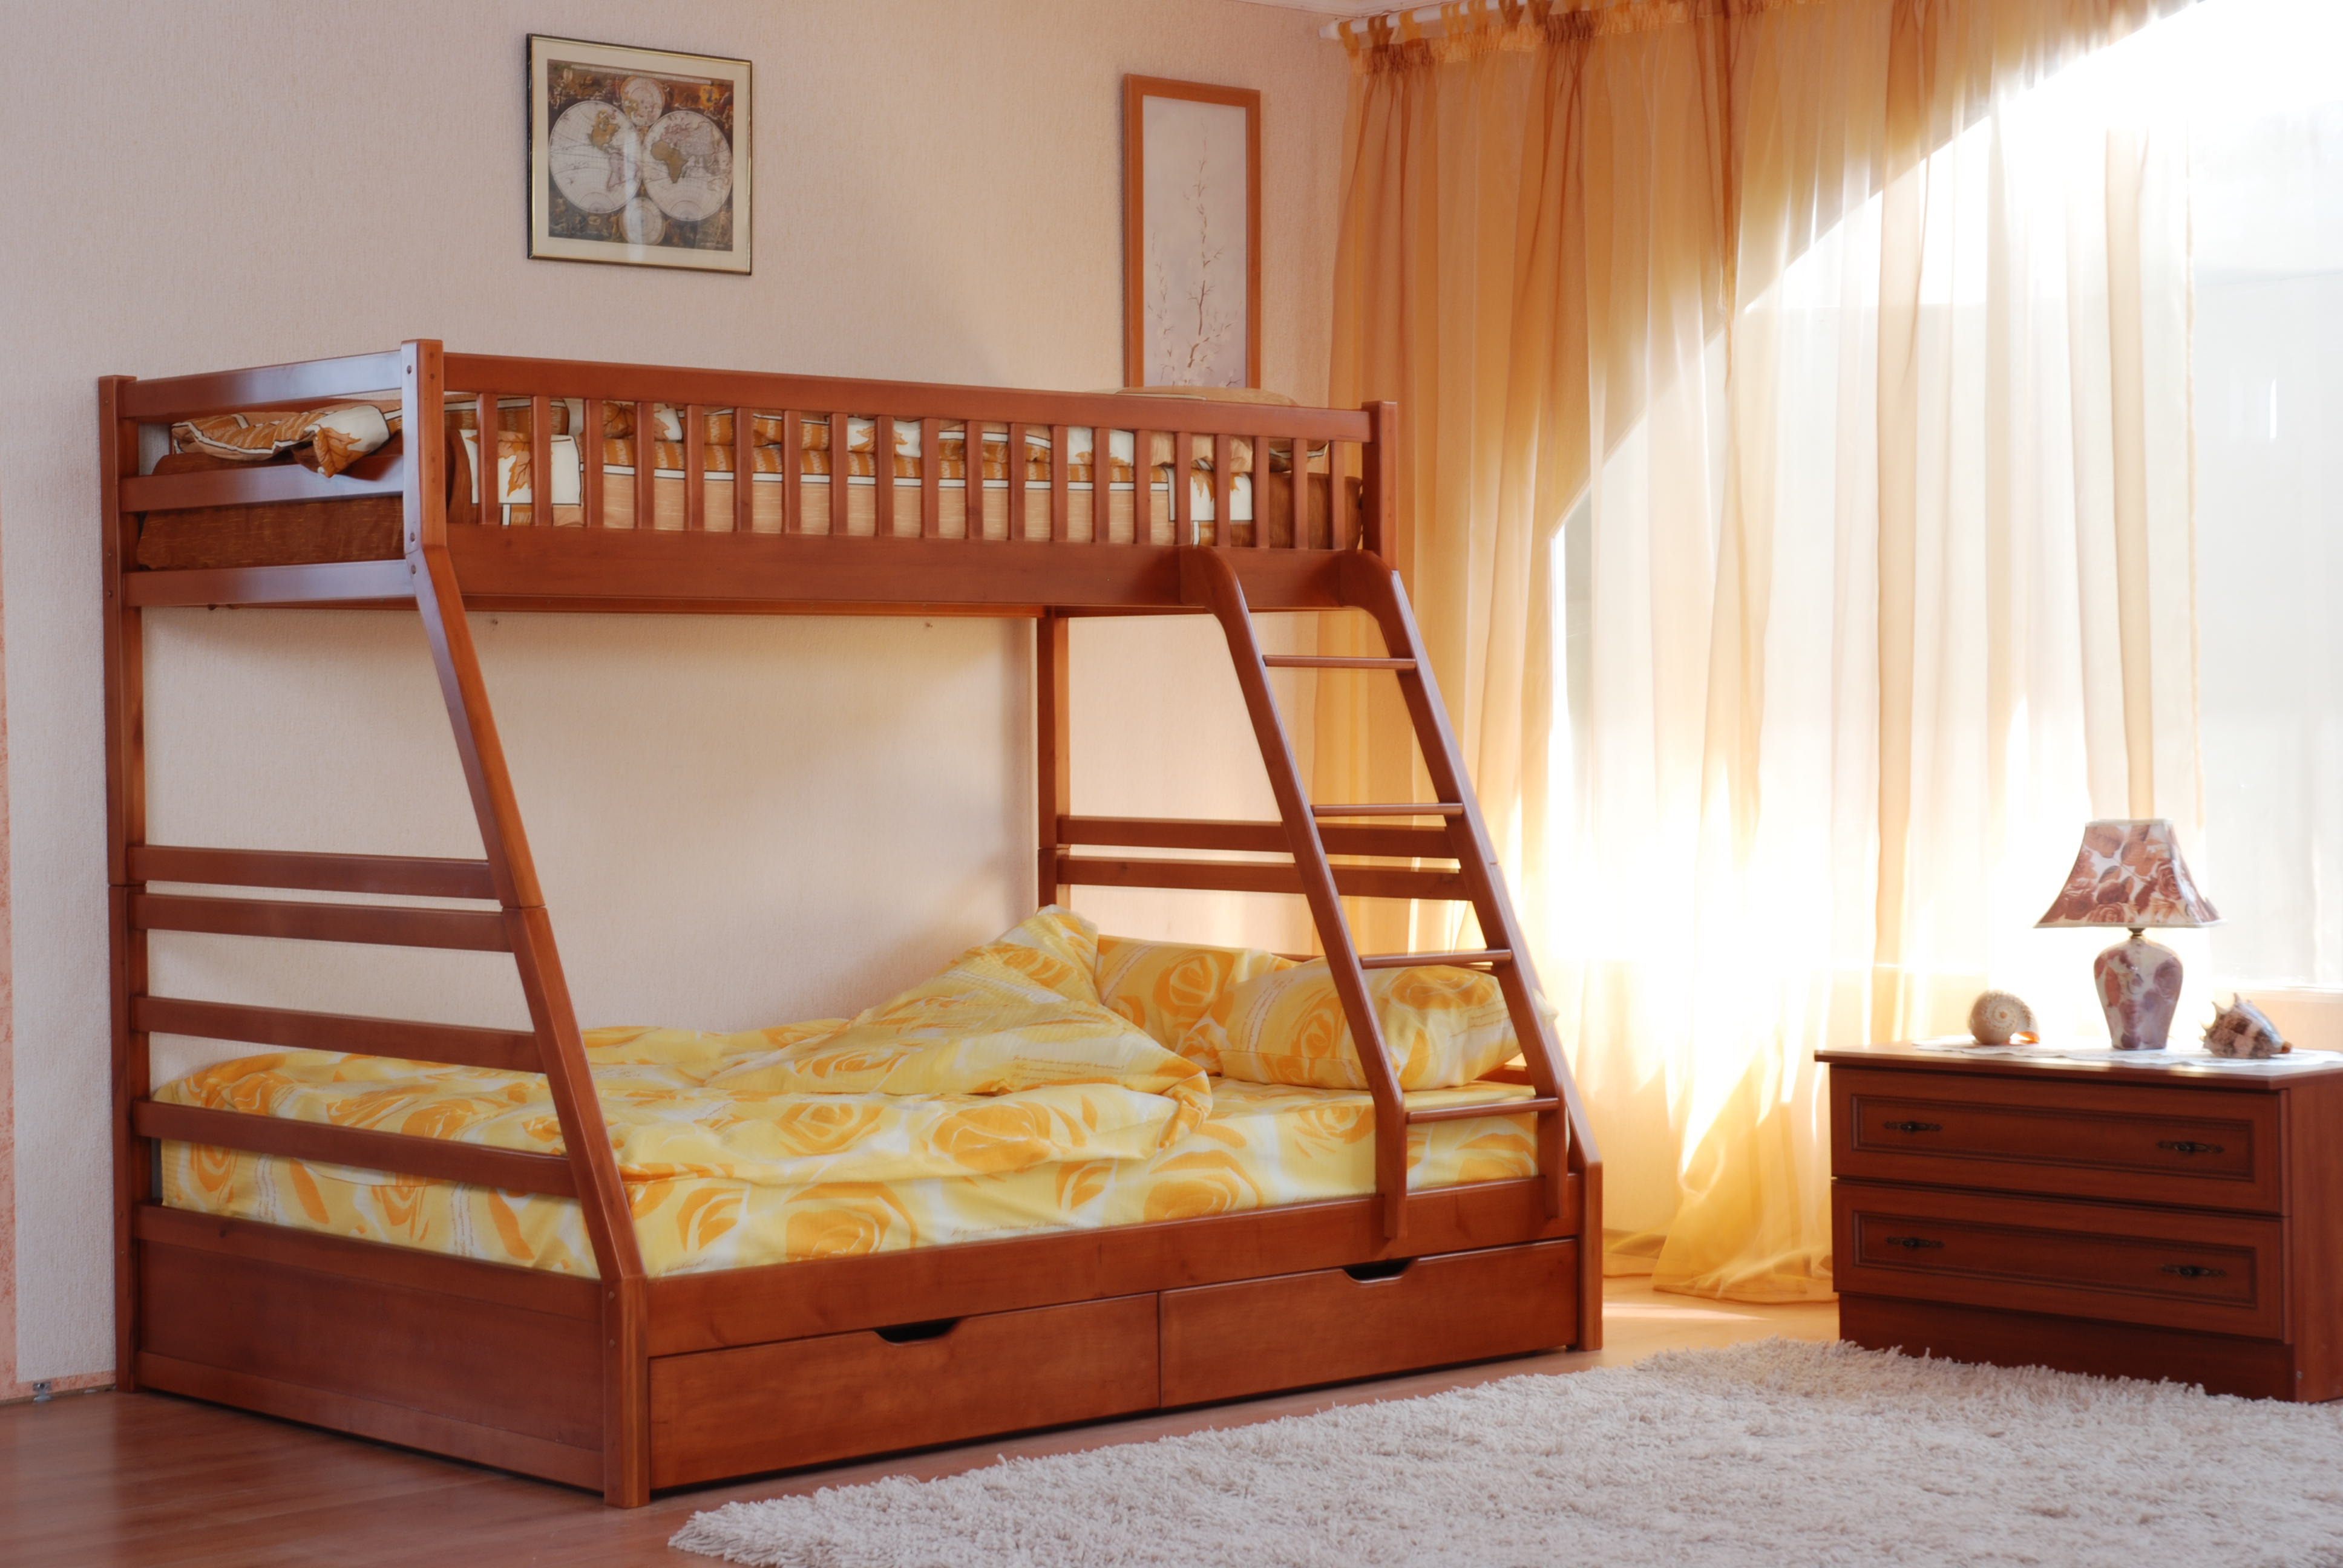 Главные критерии выбора двуярусной кровати в детскую